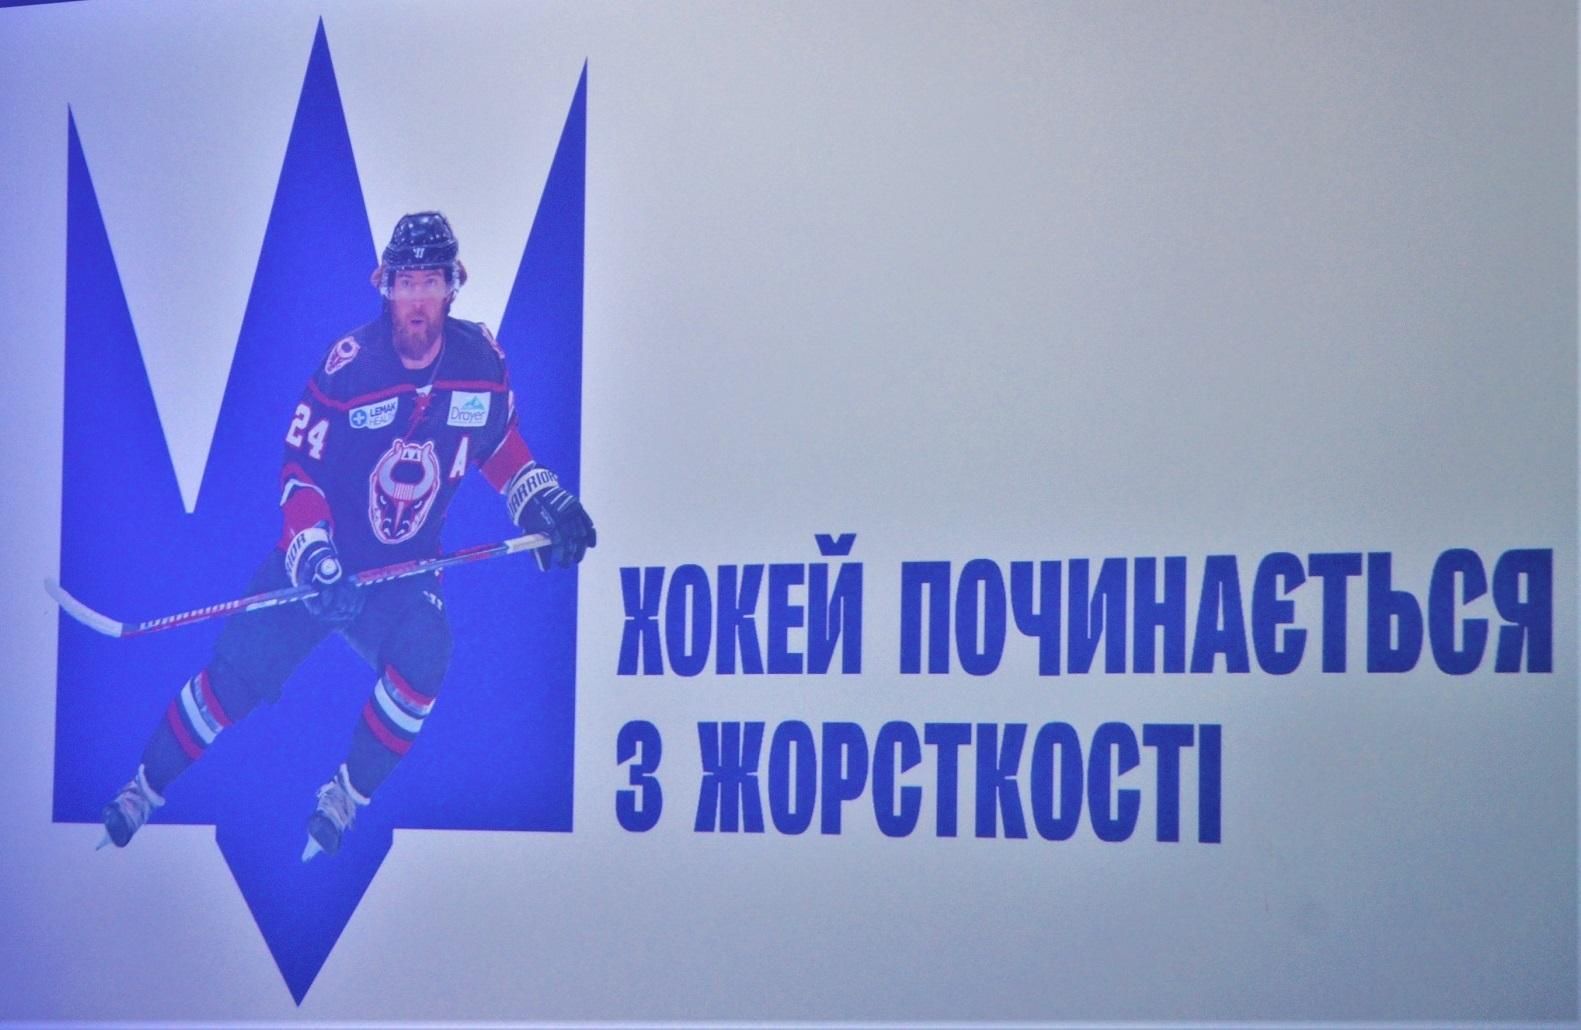 Нове лого Федерації хоккею України